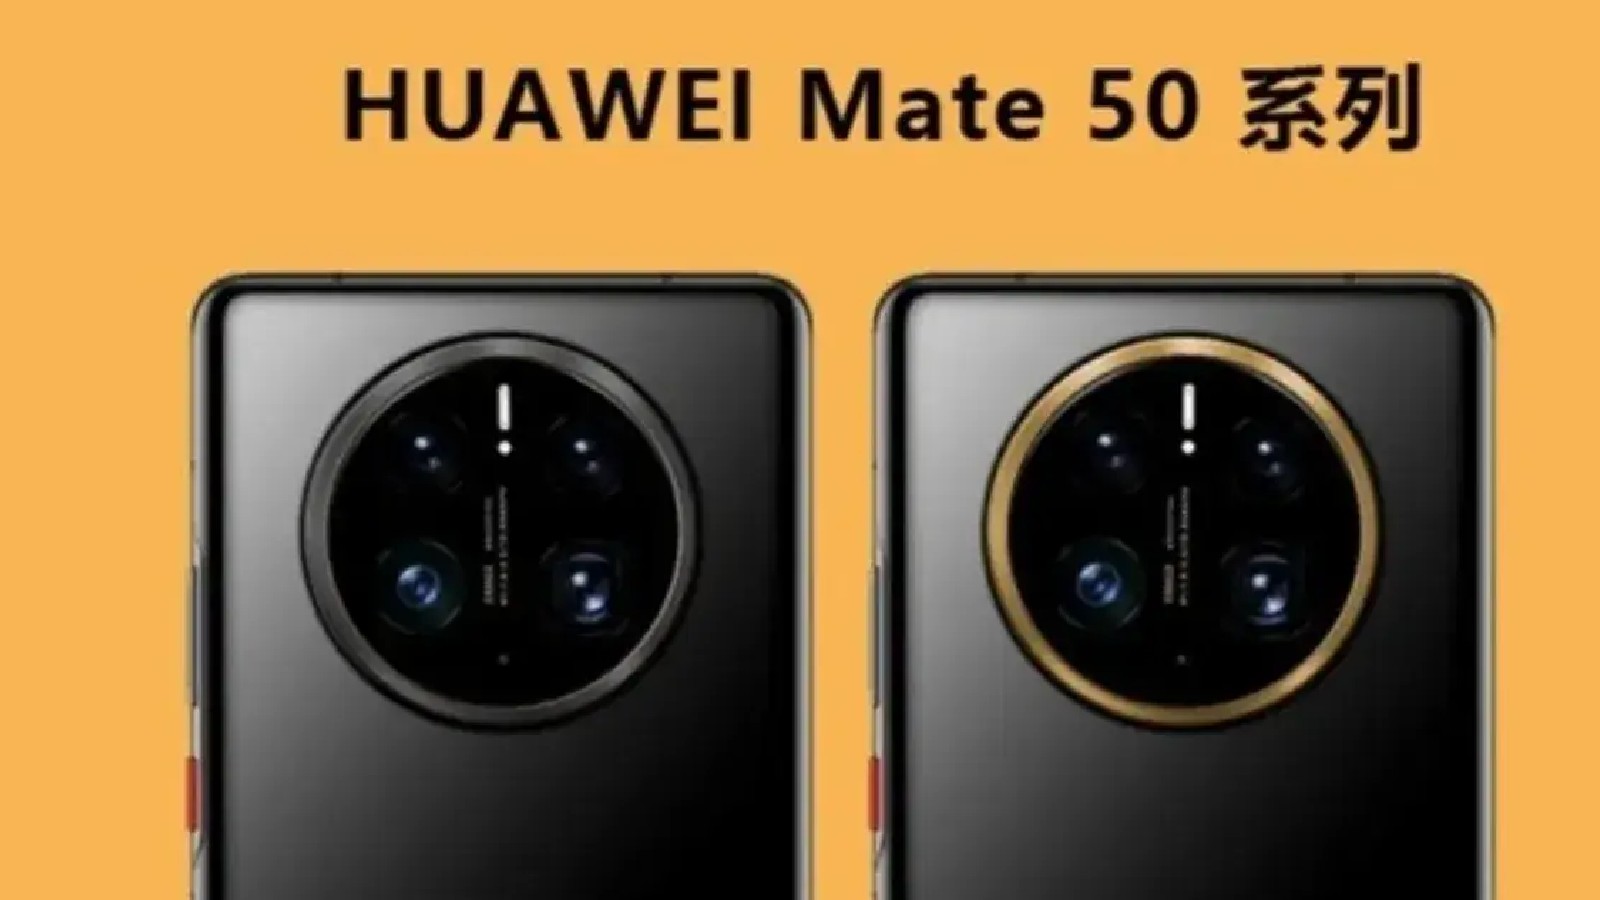 Ests 50. Huawei Mate 50 Pro зарядка. Honor Mate 50. Хуавей мате 50 про. Mate 50 Pro не Huawei.